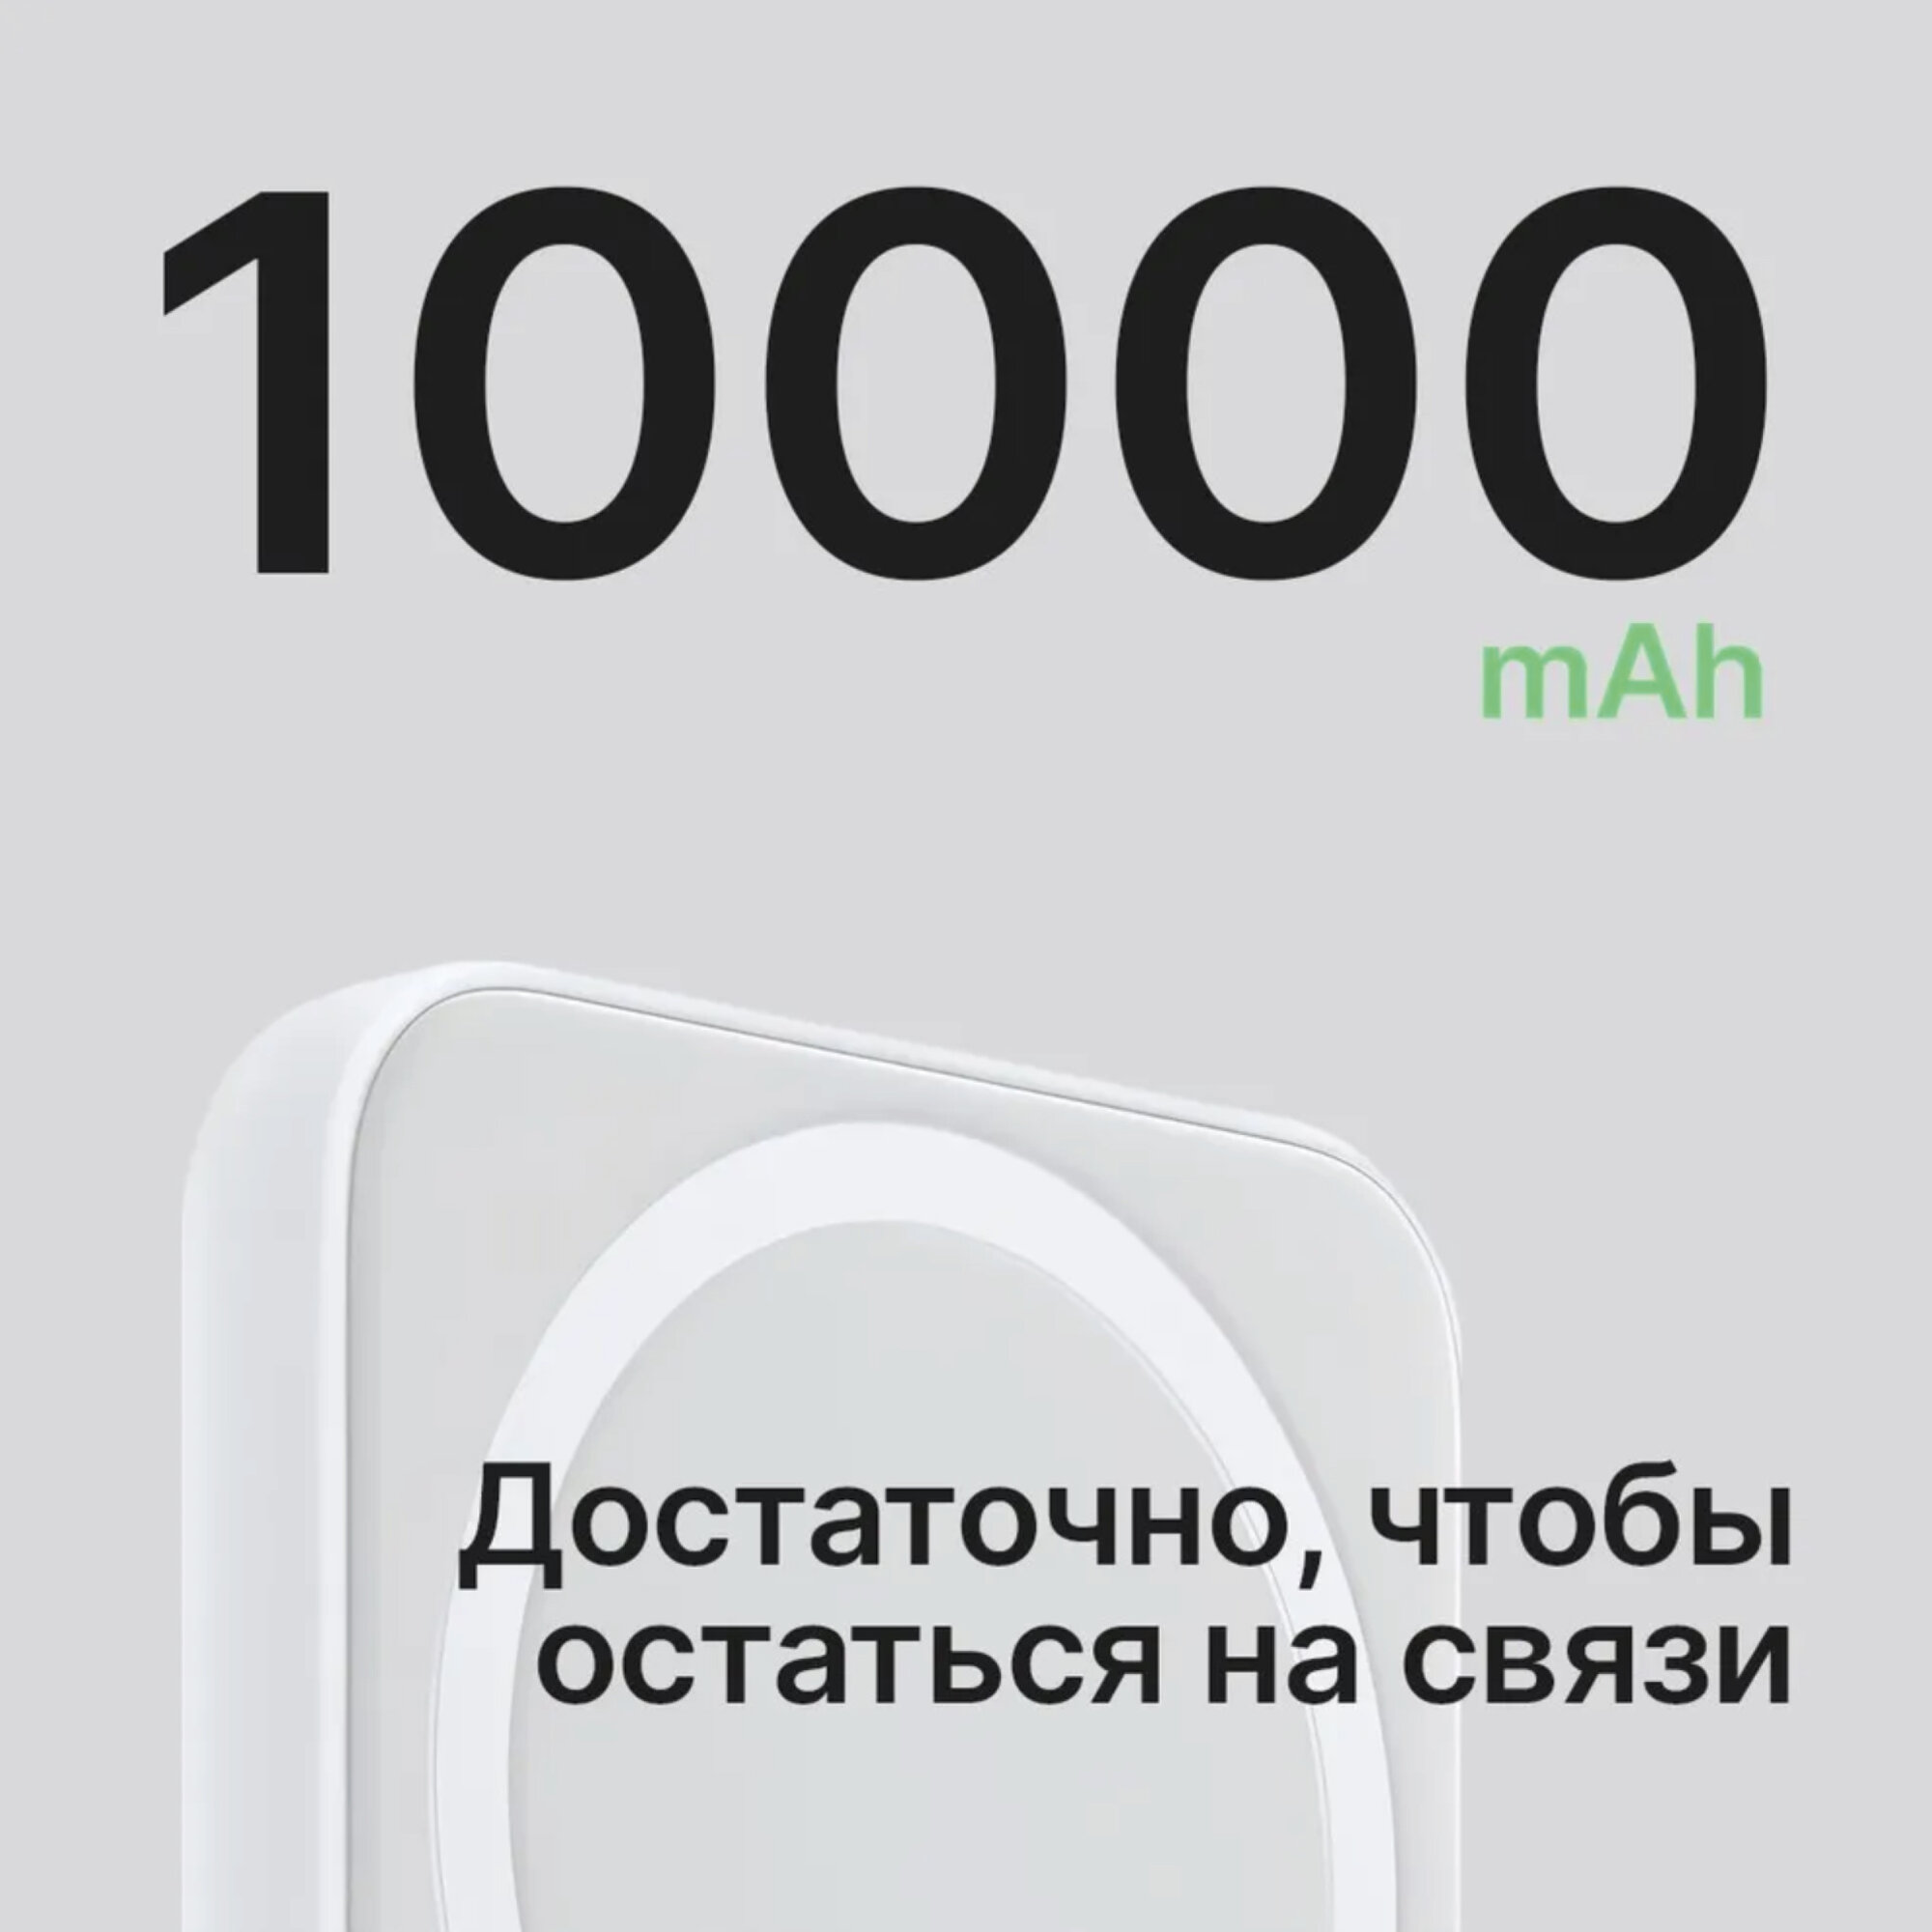 Беспроводная зарядка MagSafe с емкостью 10 000 мА·ч, белого цвета